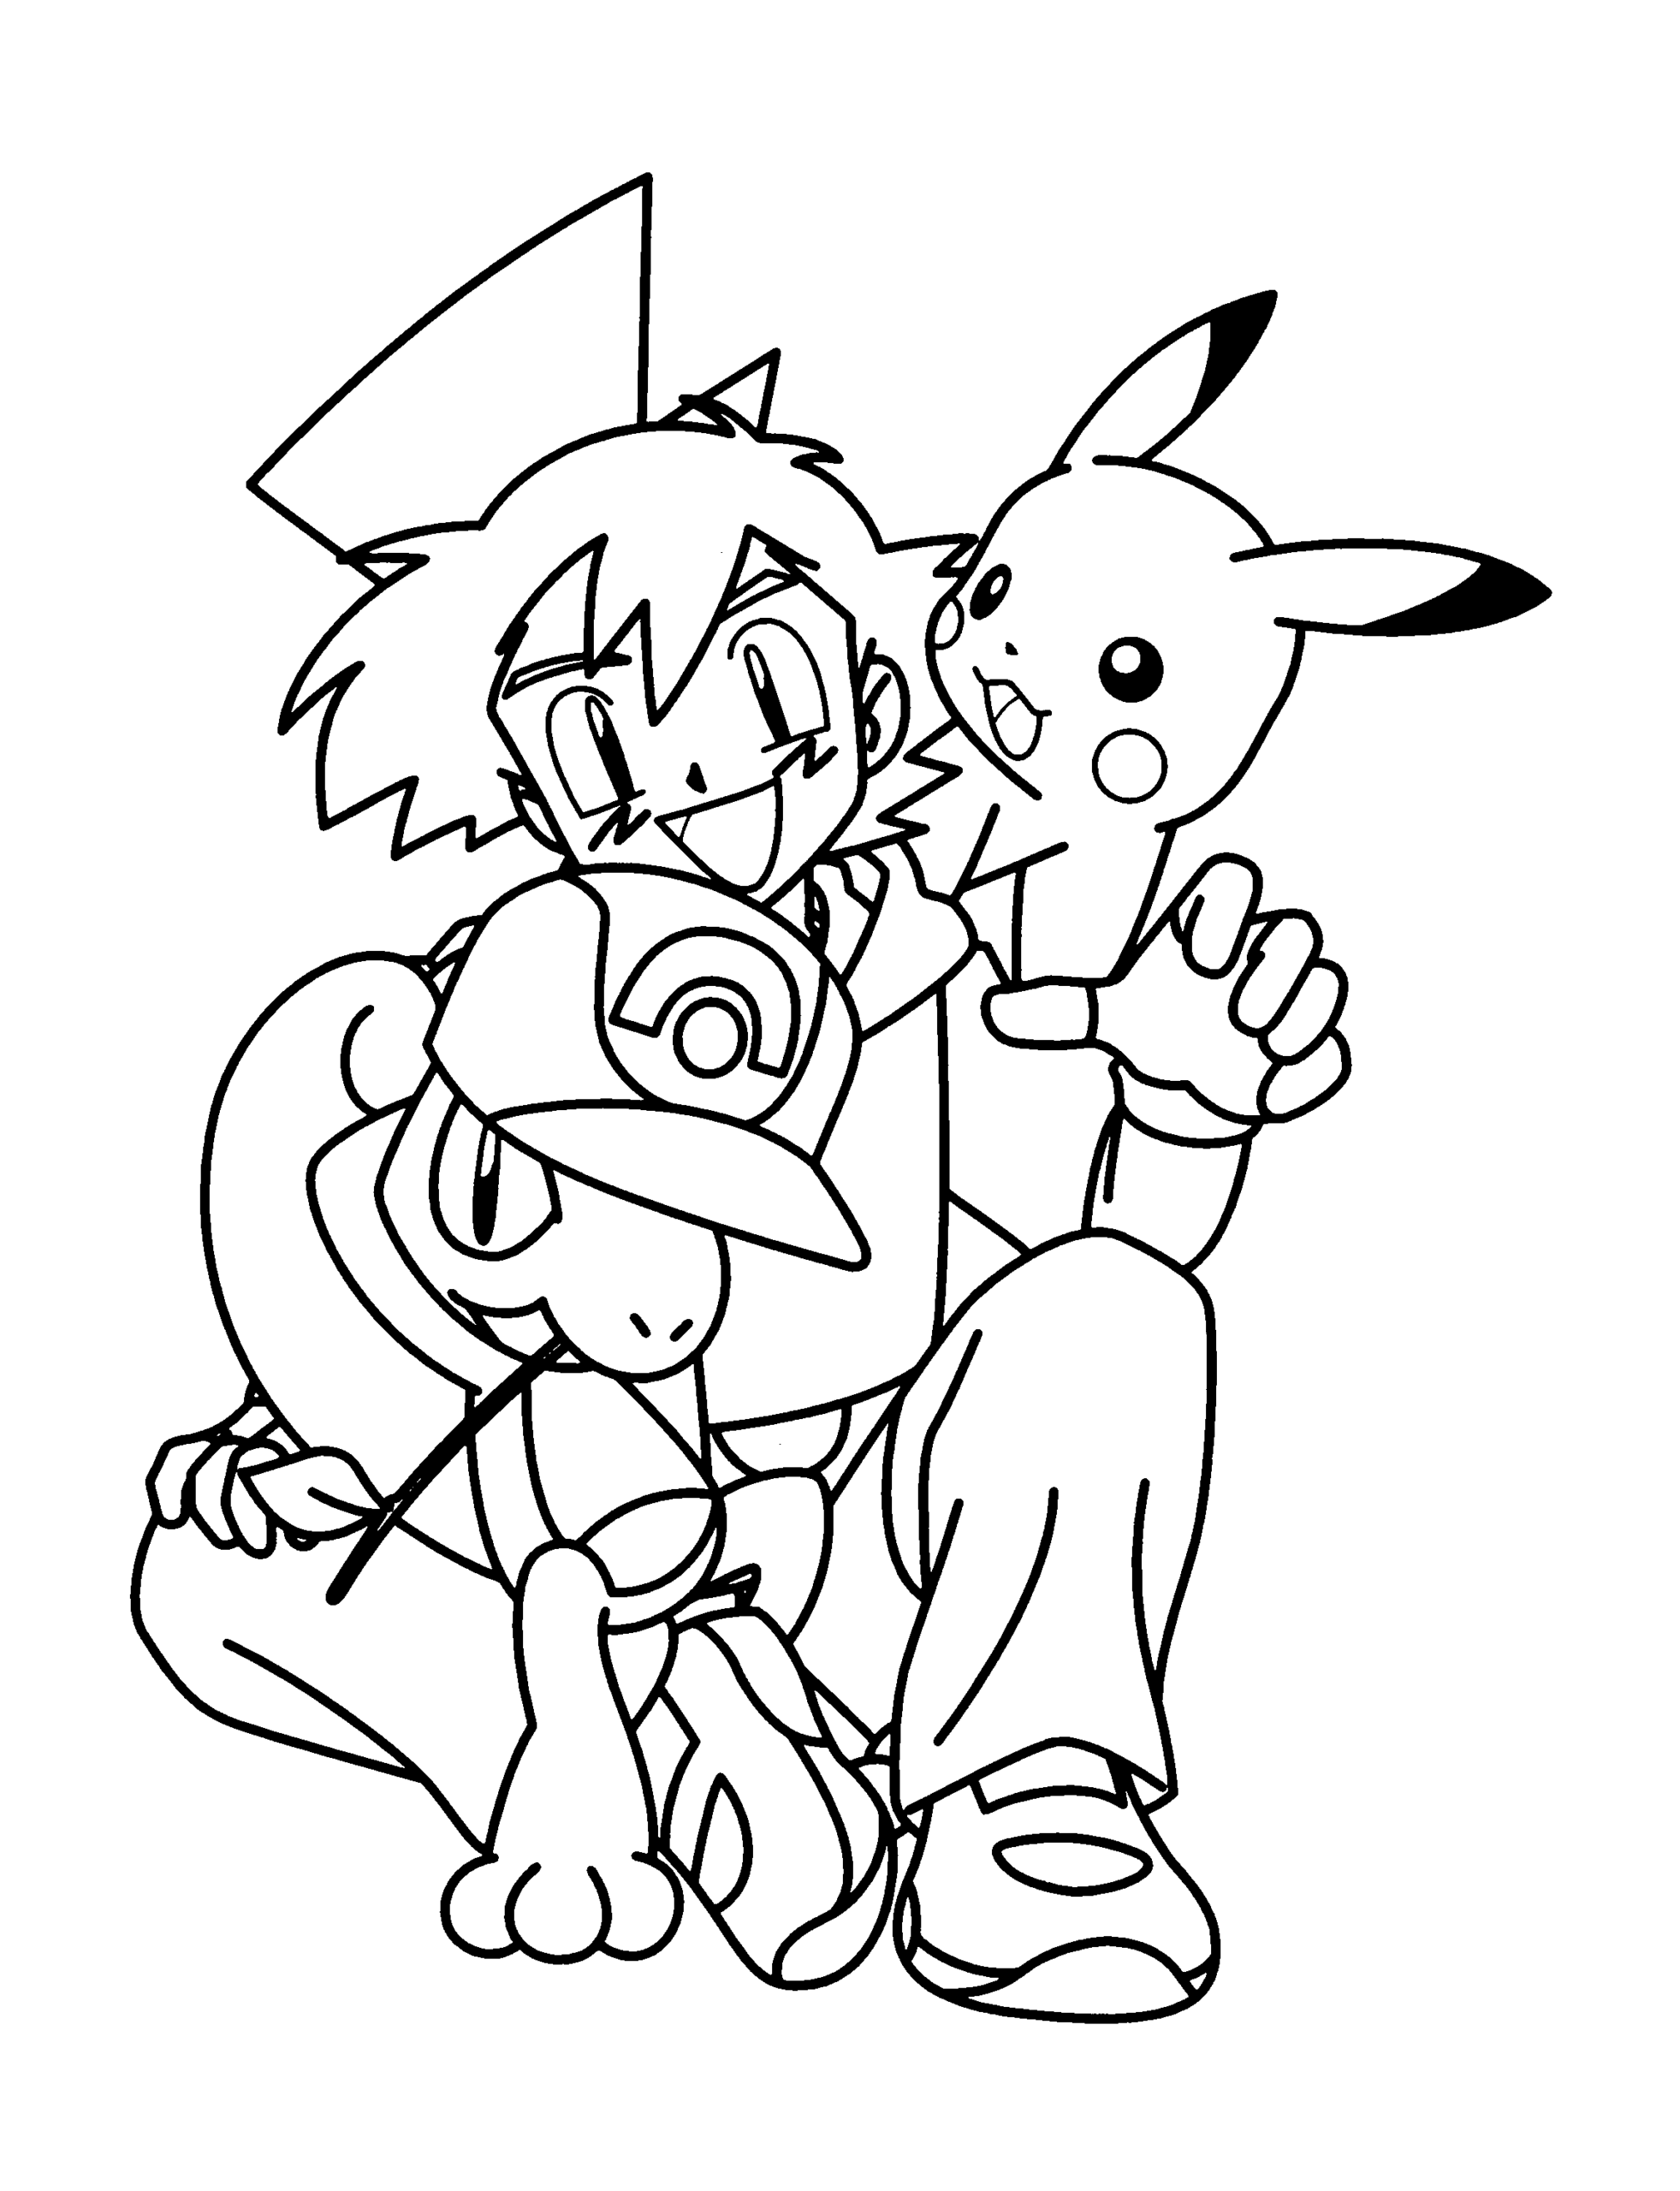 Kolorowanka Pikachu wspina się na ramię Ash siedzącego na ziemi